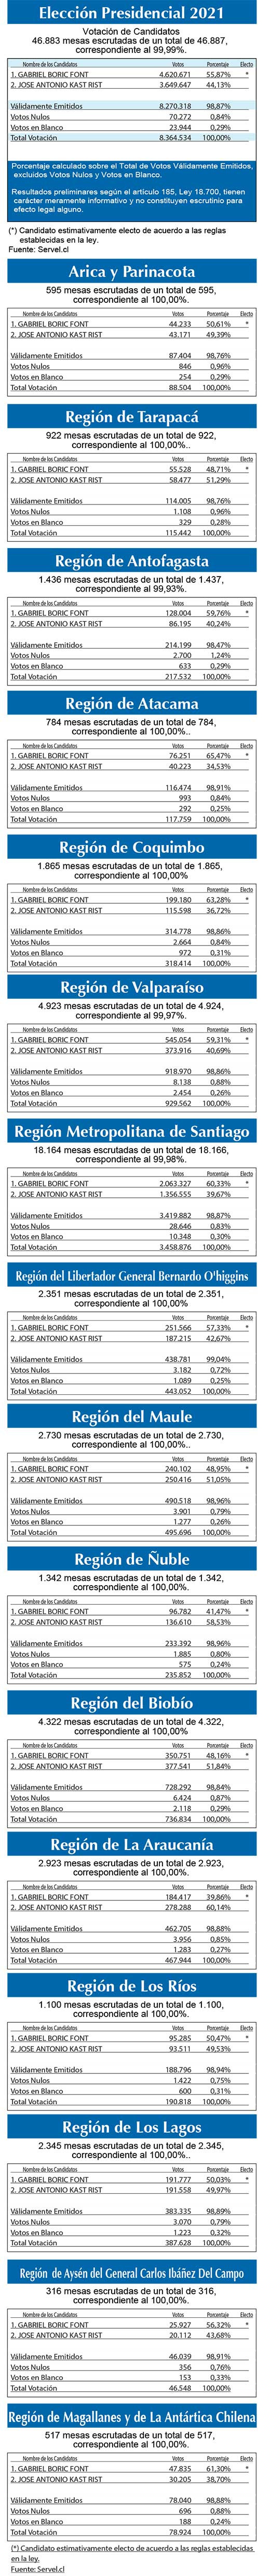 Resultados elecciones x region2